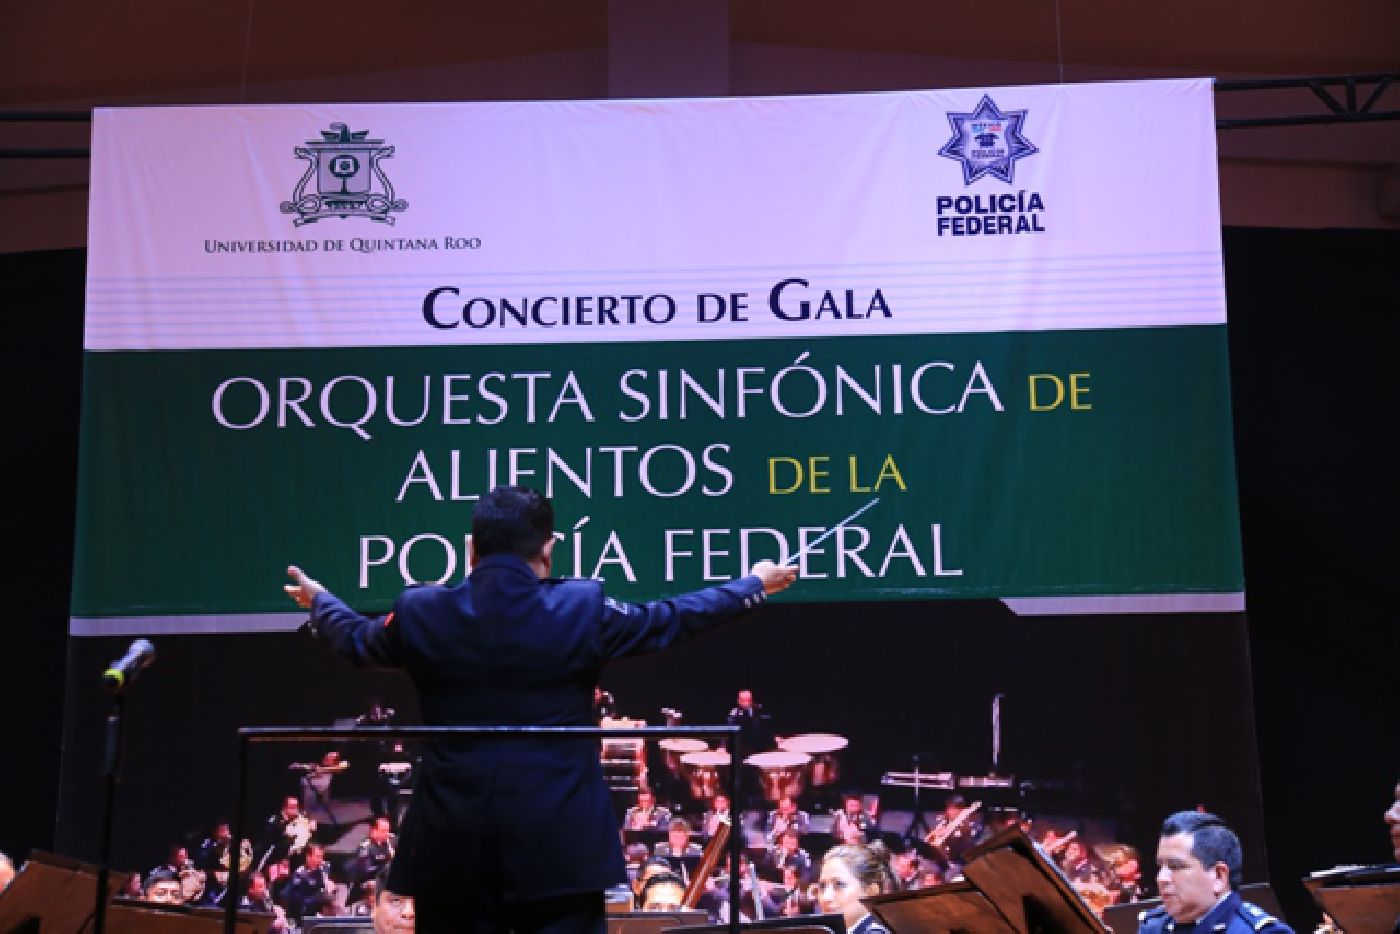 Concierto de gala de la Orquesta Sinfónica de Alientos de la Policía Federal